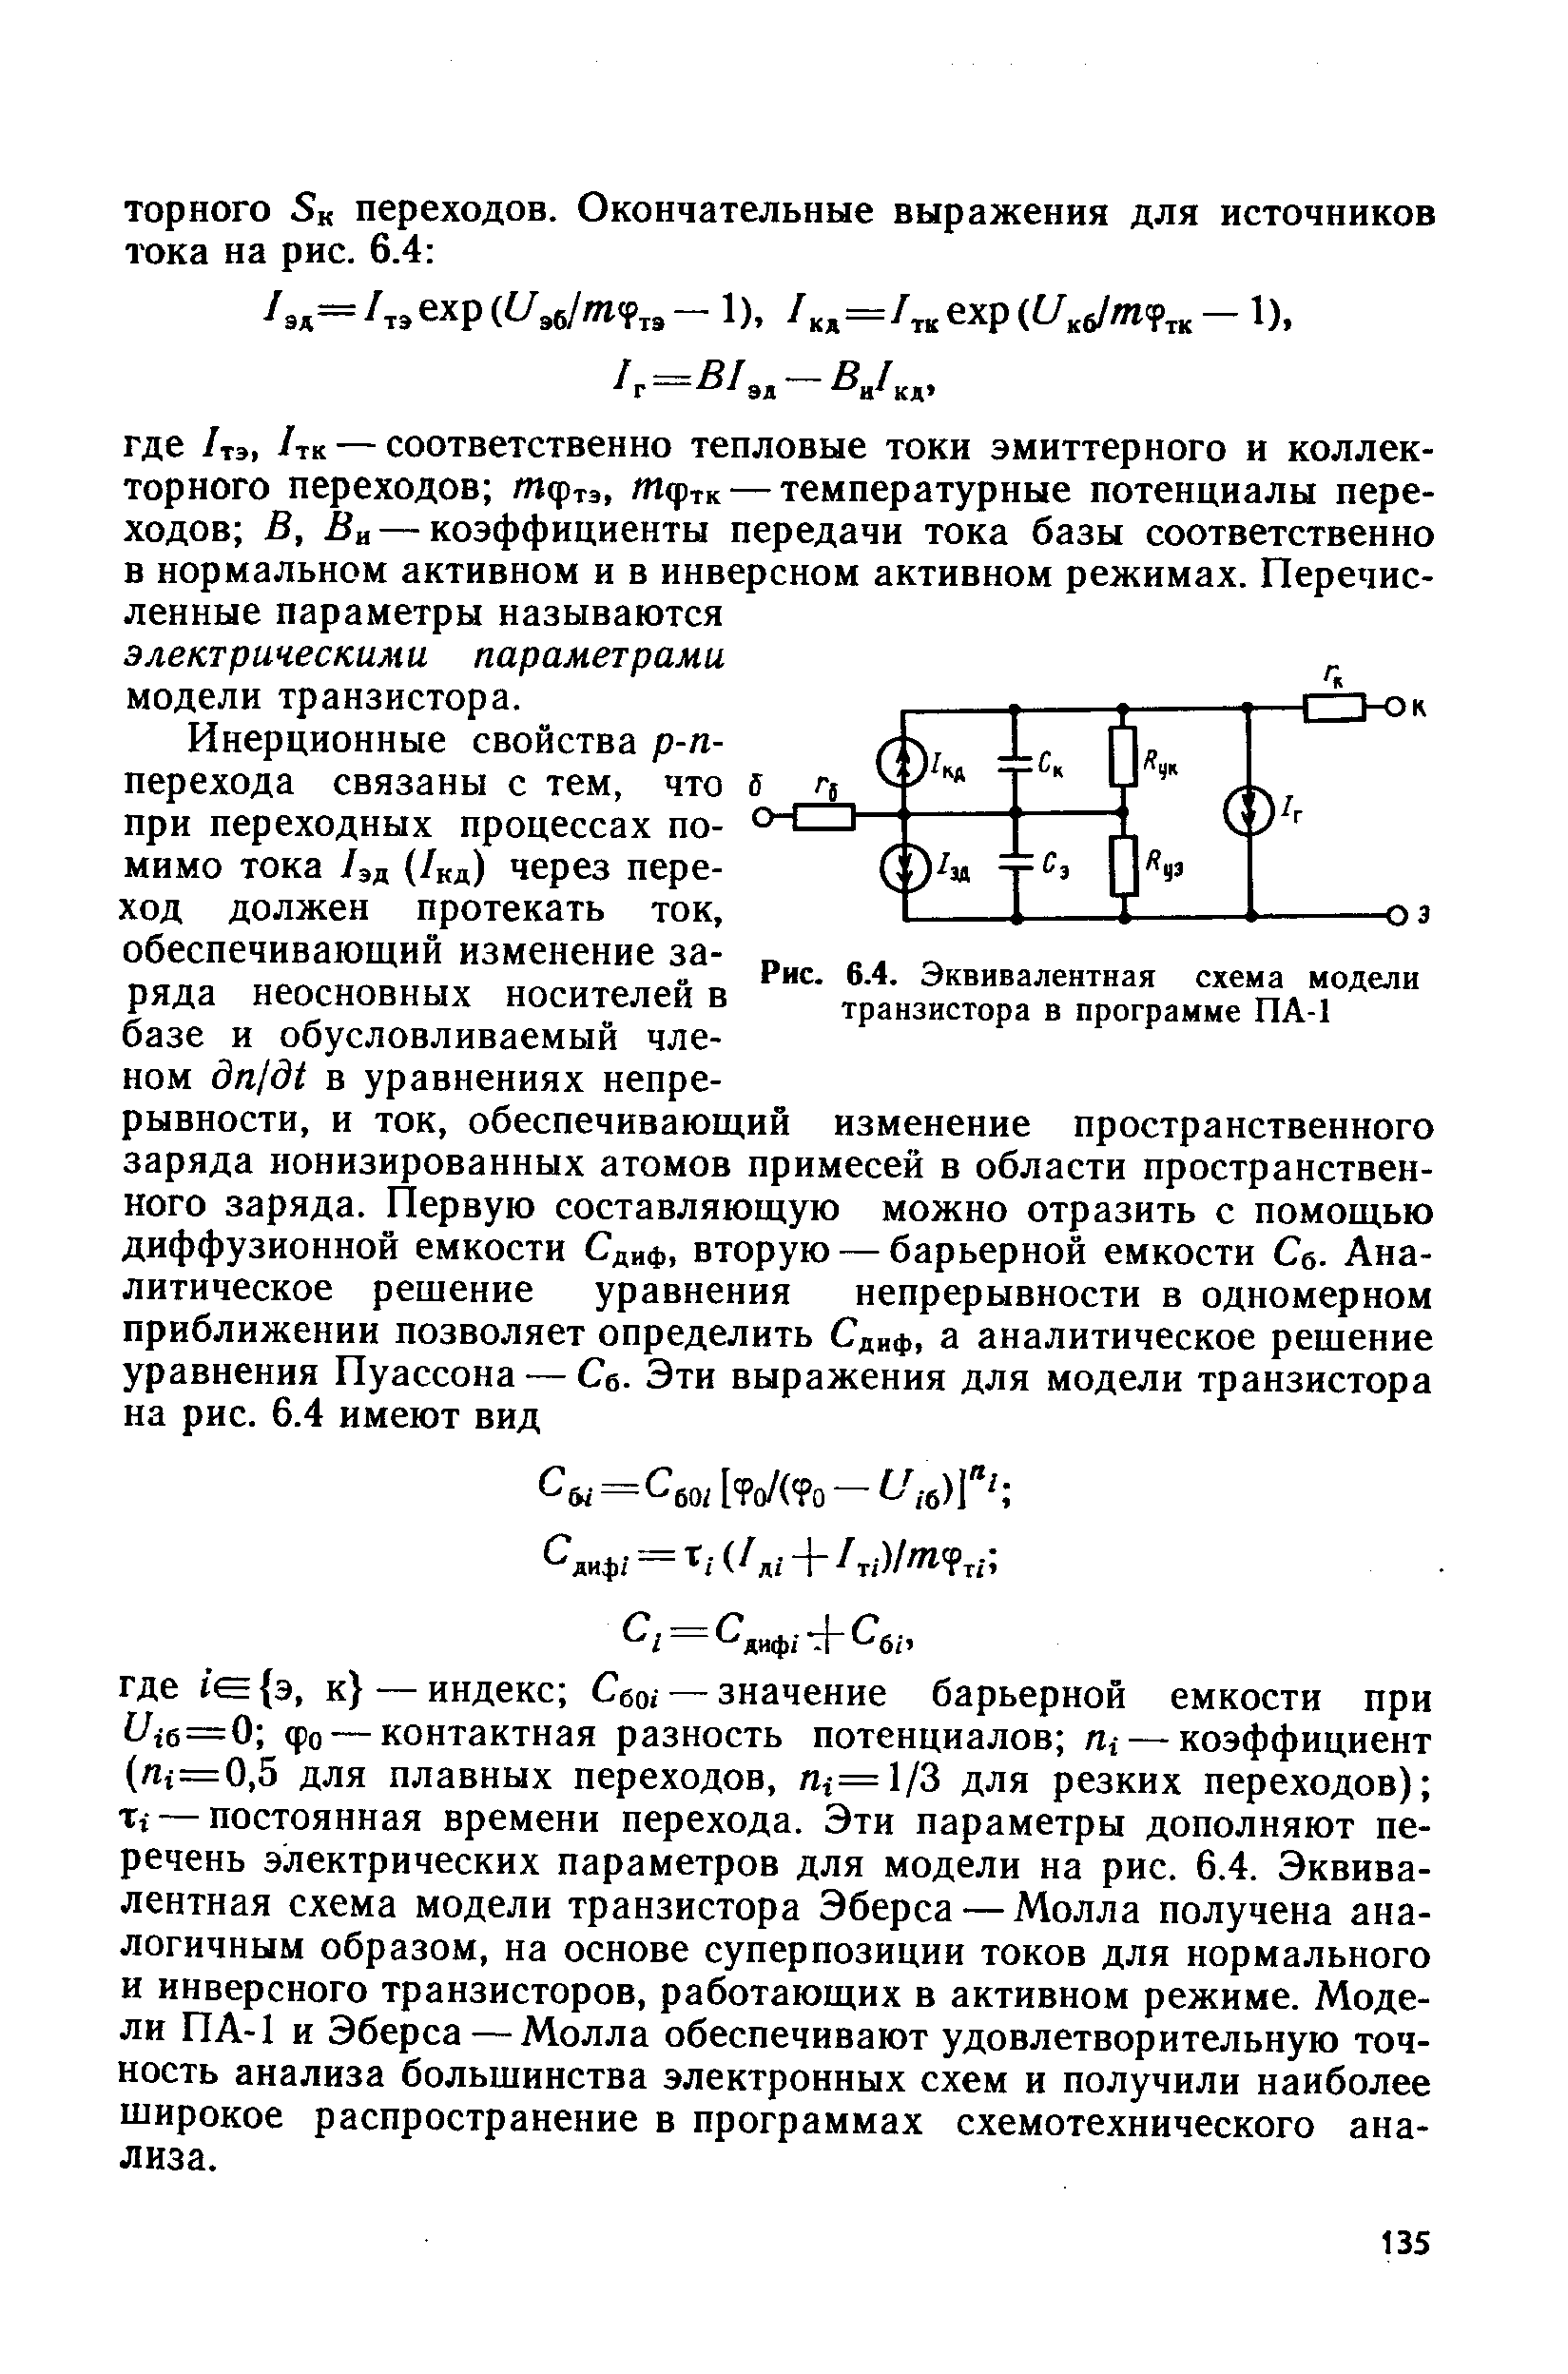 Рис. 6.4. Эквивалентная <a href="/info/23457">схема модели</a> транзистора в программе ПА-1
